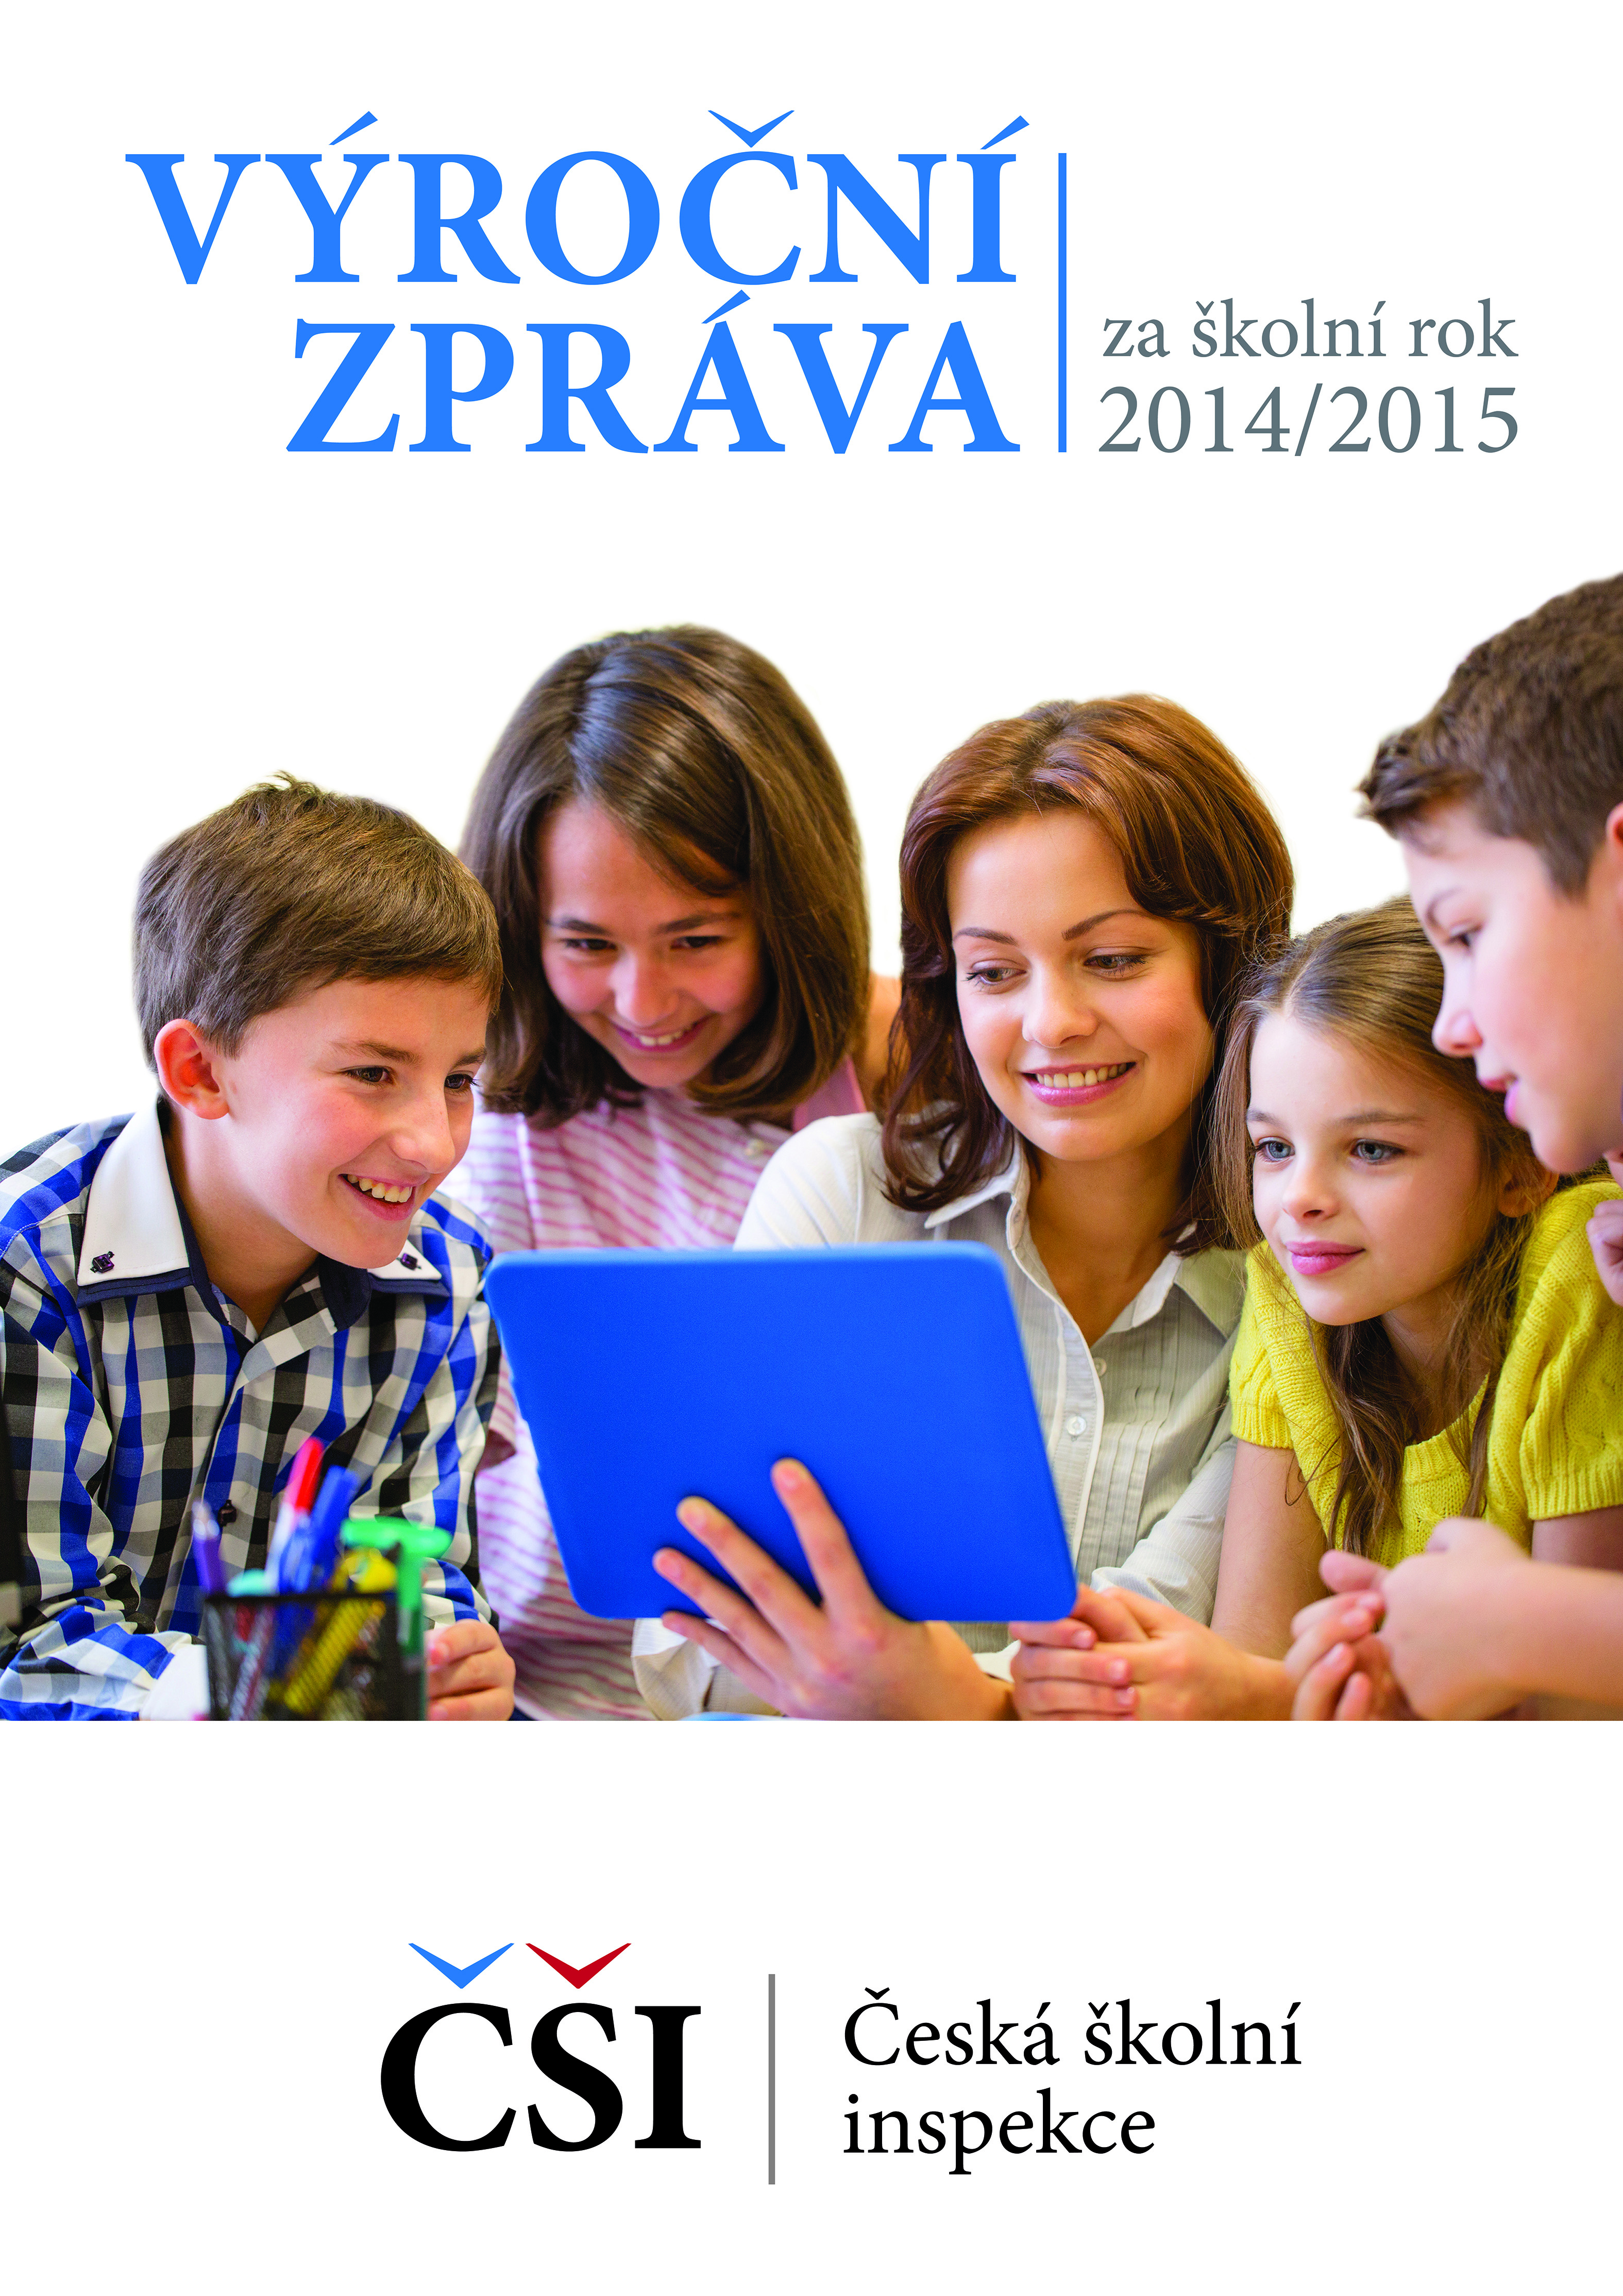 Výroční zpráva České školní inspekce za školní rok 2014/2015